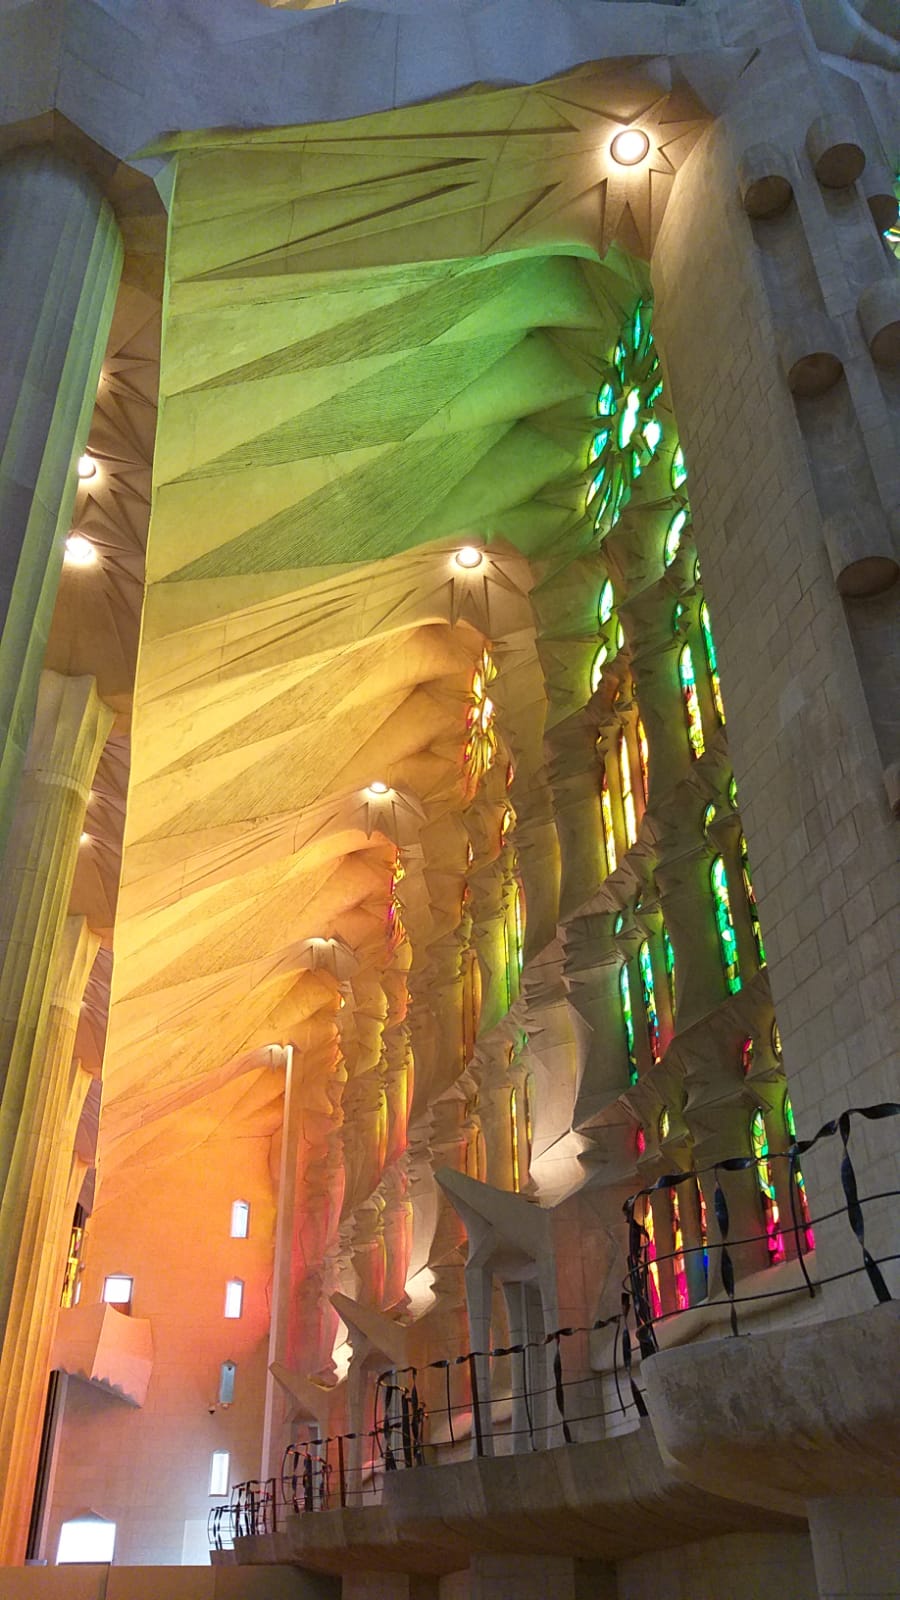 Sagrada stained glass windows